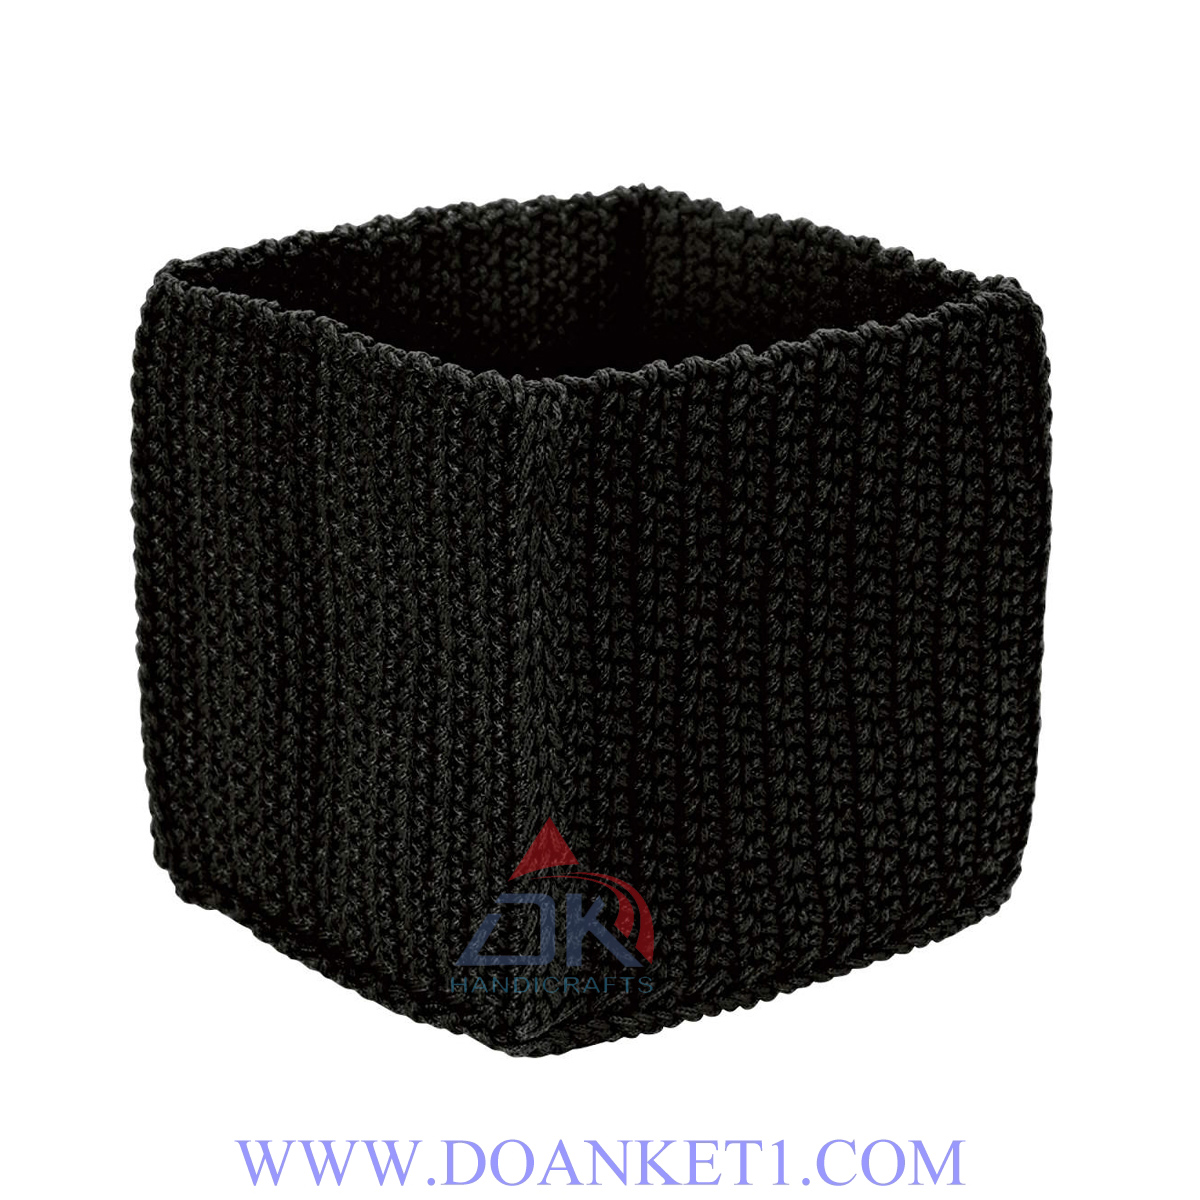 Textile Storage Basket # DK157